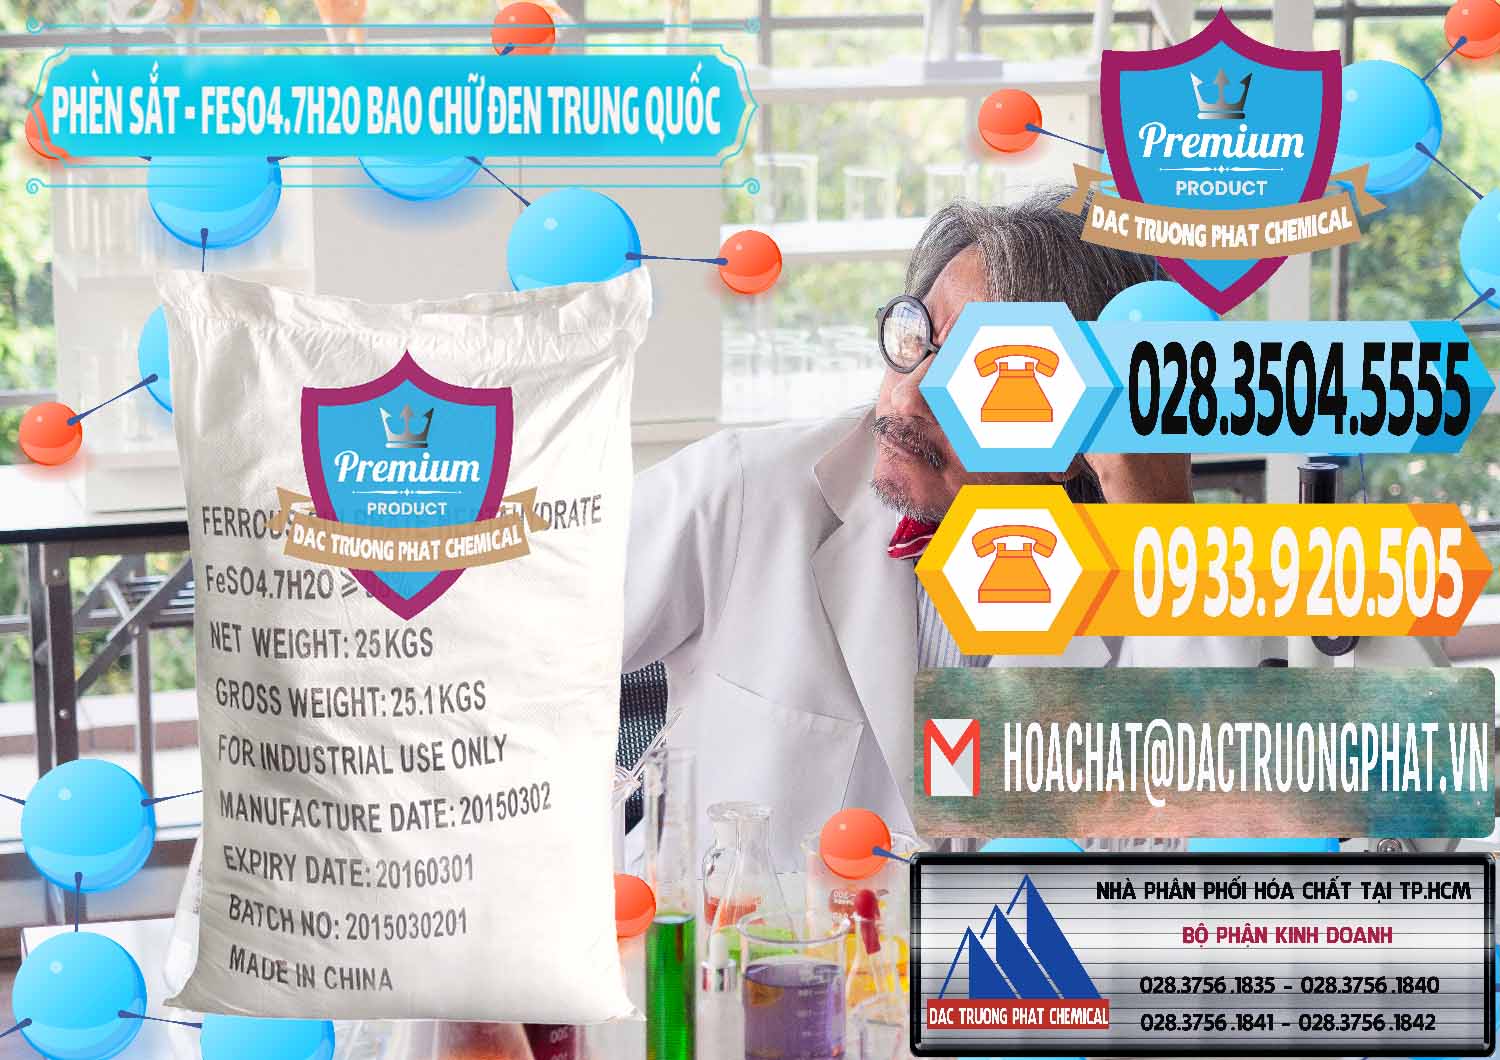 Bán & cung ứng Phèn Sắt - FeSO4.7H2O Bao Chữ Đen Trung Quốc China - 0234 - Công ty chuyên cung cấp _ kinh doanh hóa chất tại TP.HCM - hoachattayrua.net